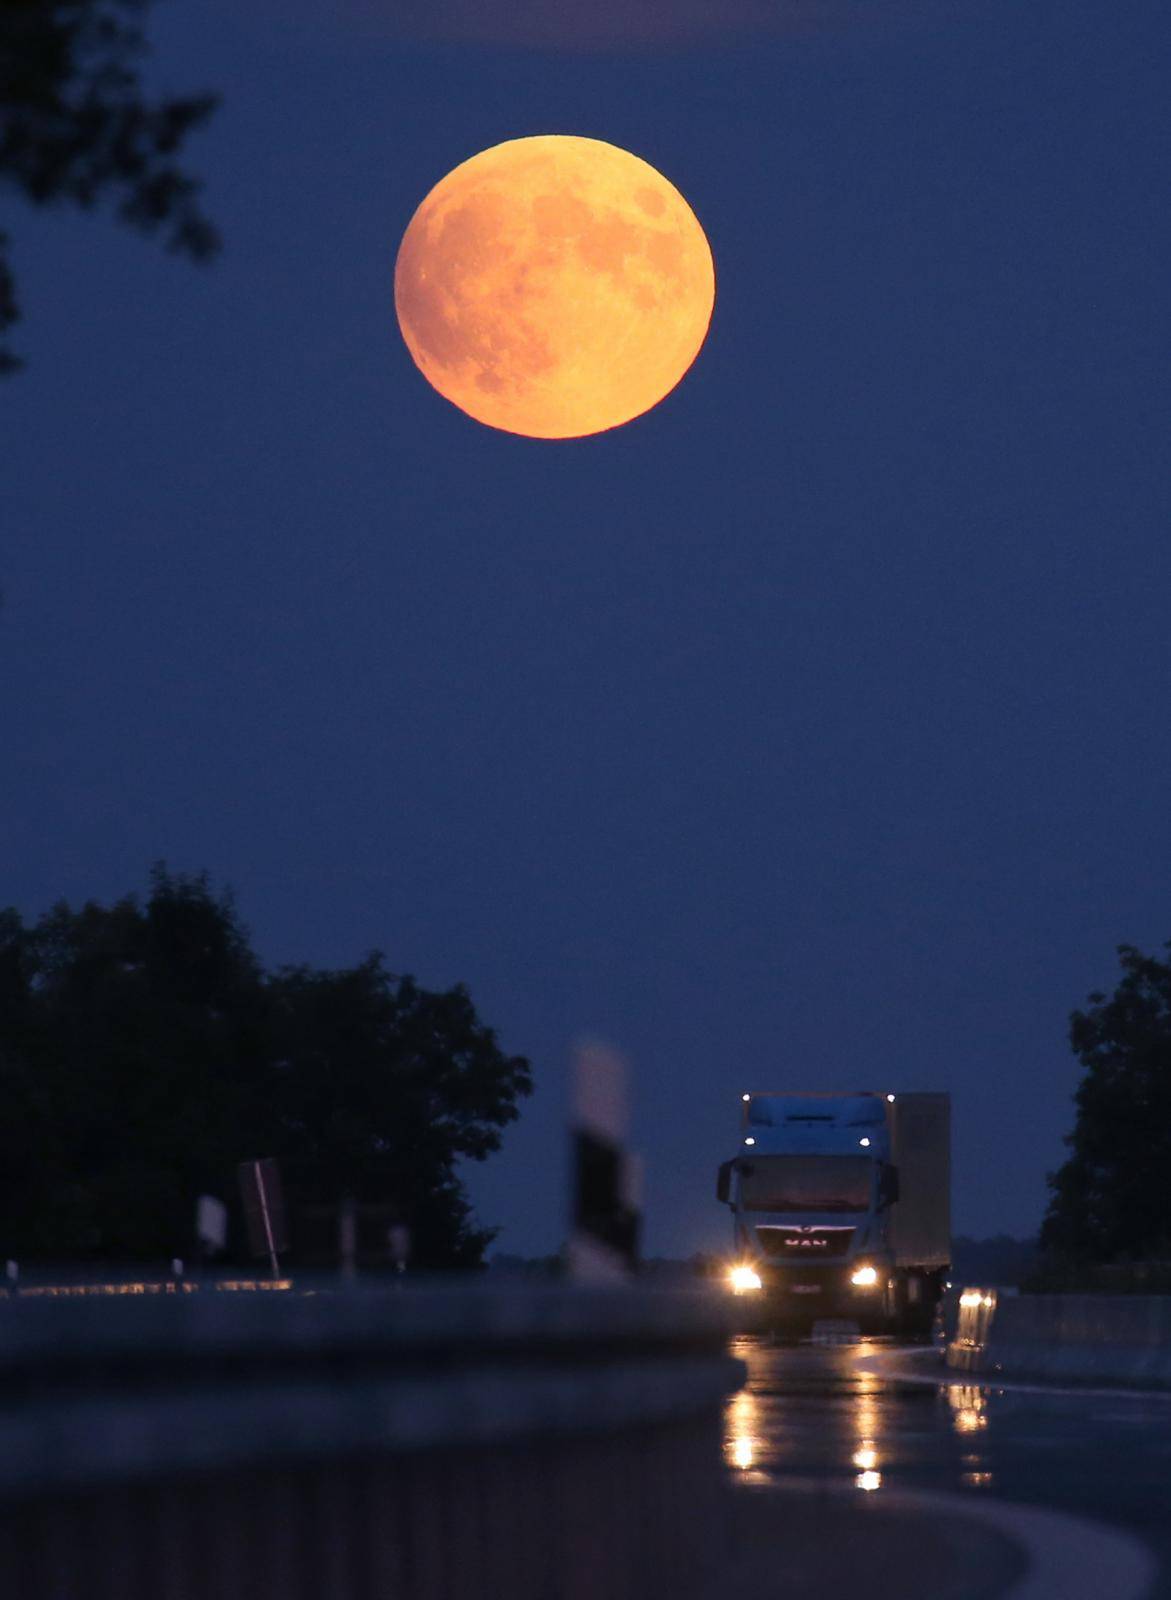 Full moon via motorway